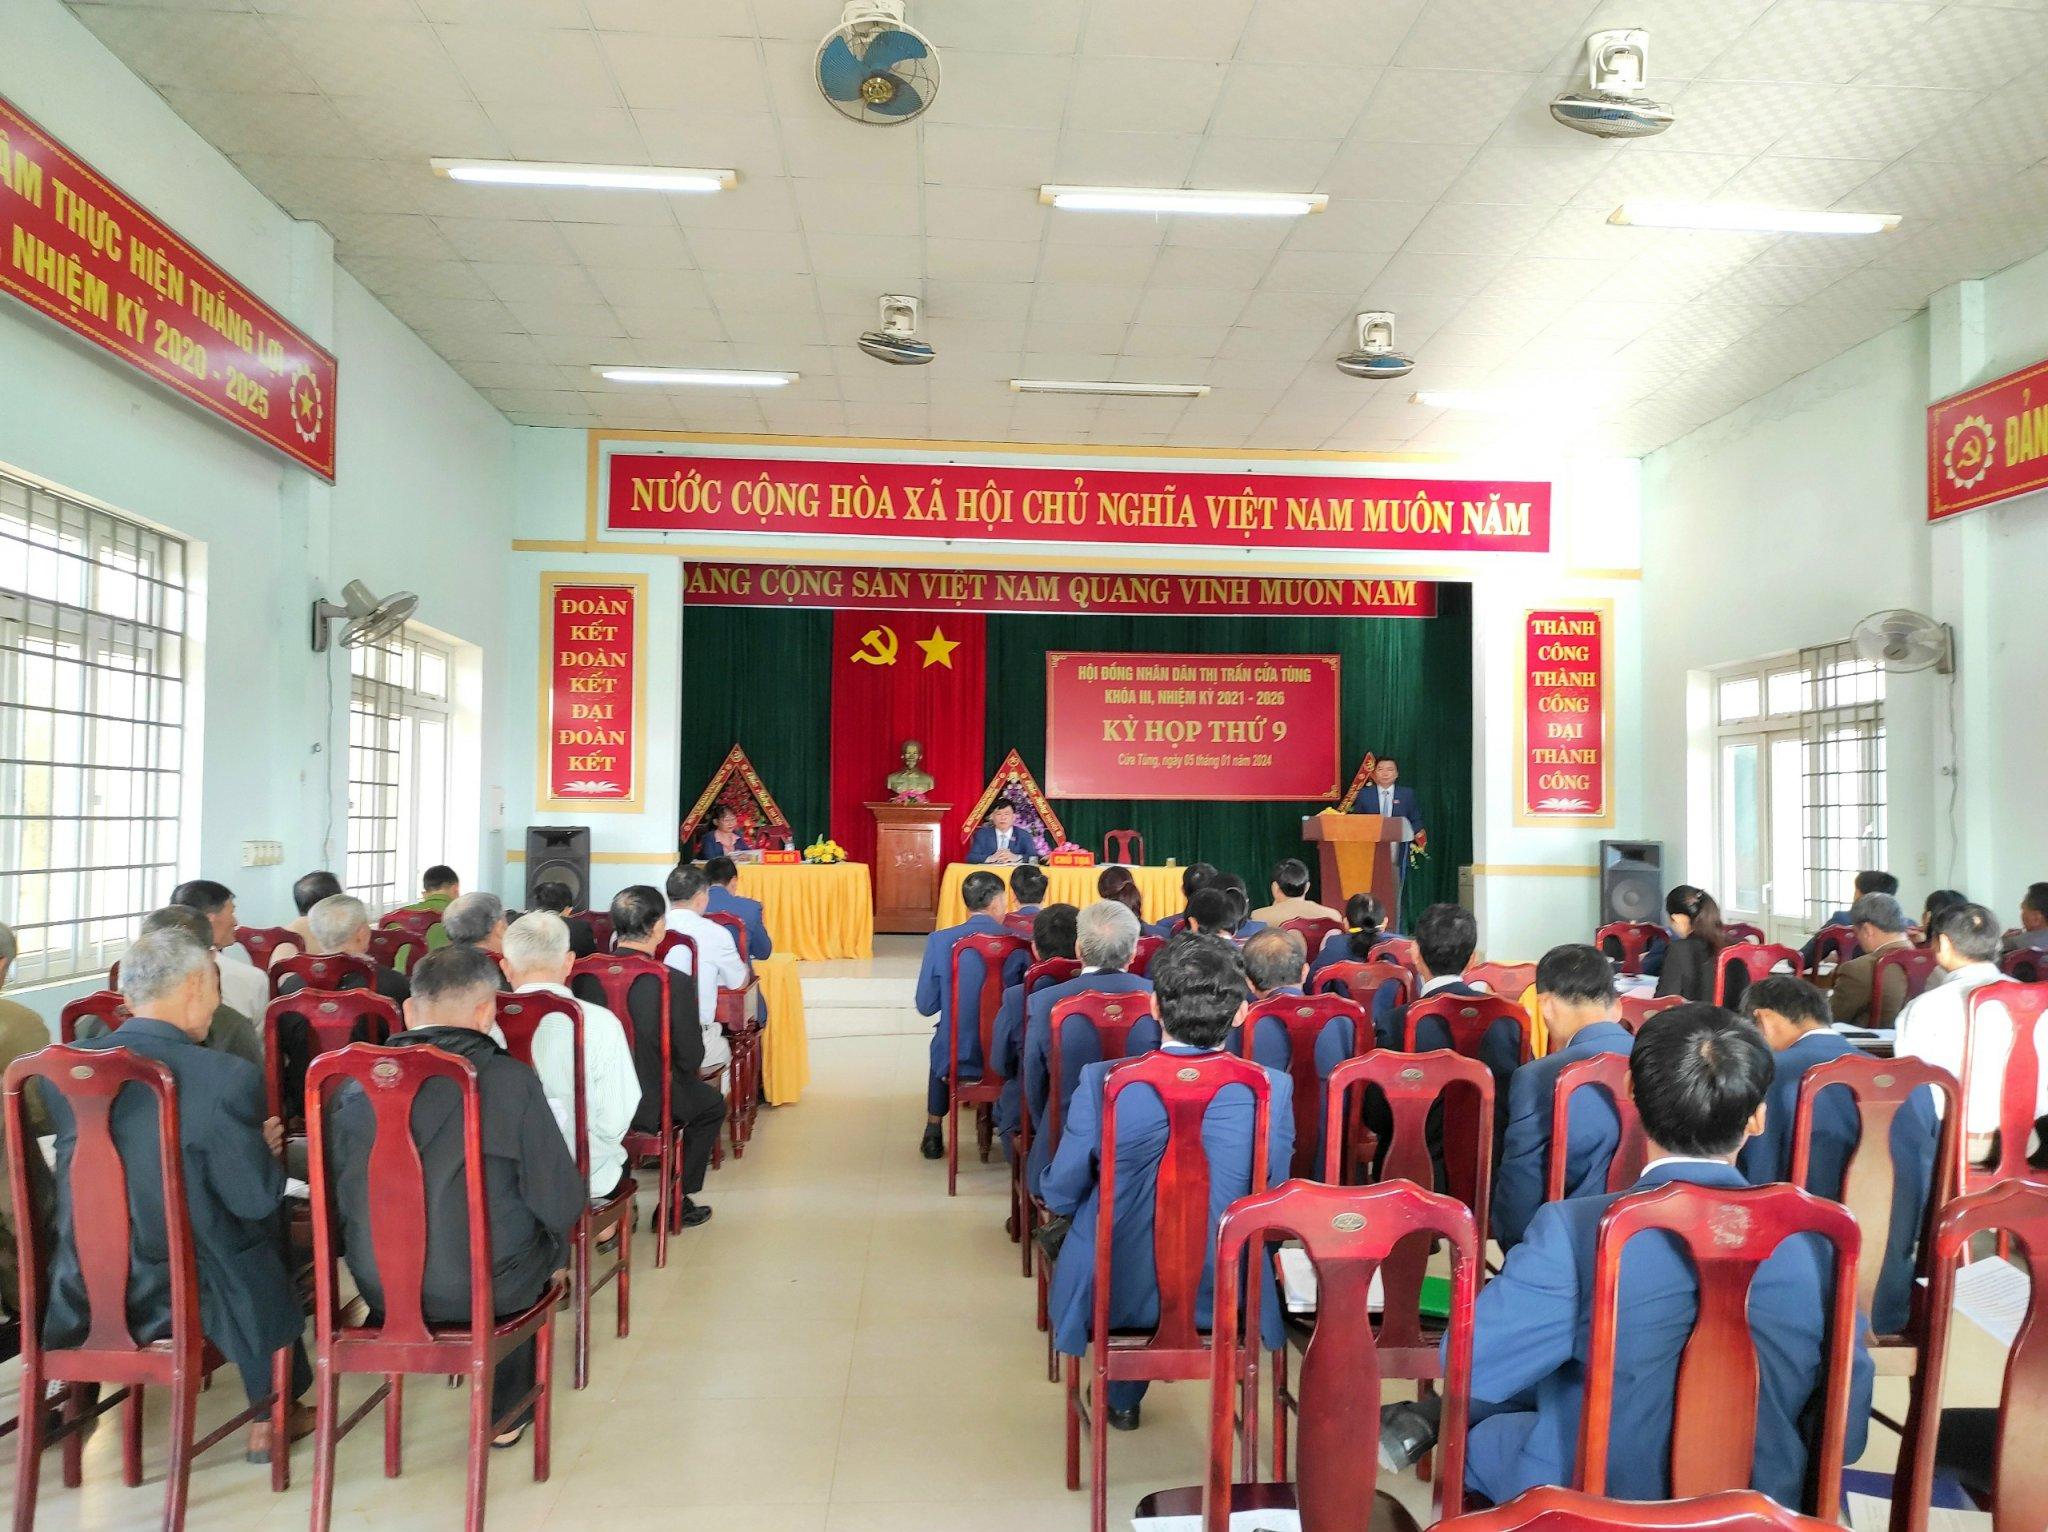 Thị trấn Cửa Tùng tổ chức kỳ họp thứ 9 -Hội đồng nhân dân khóa III, nhiệm kỳ 2021 – 2026.